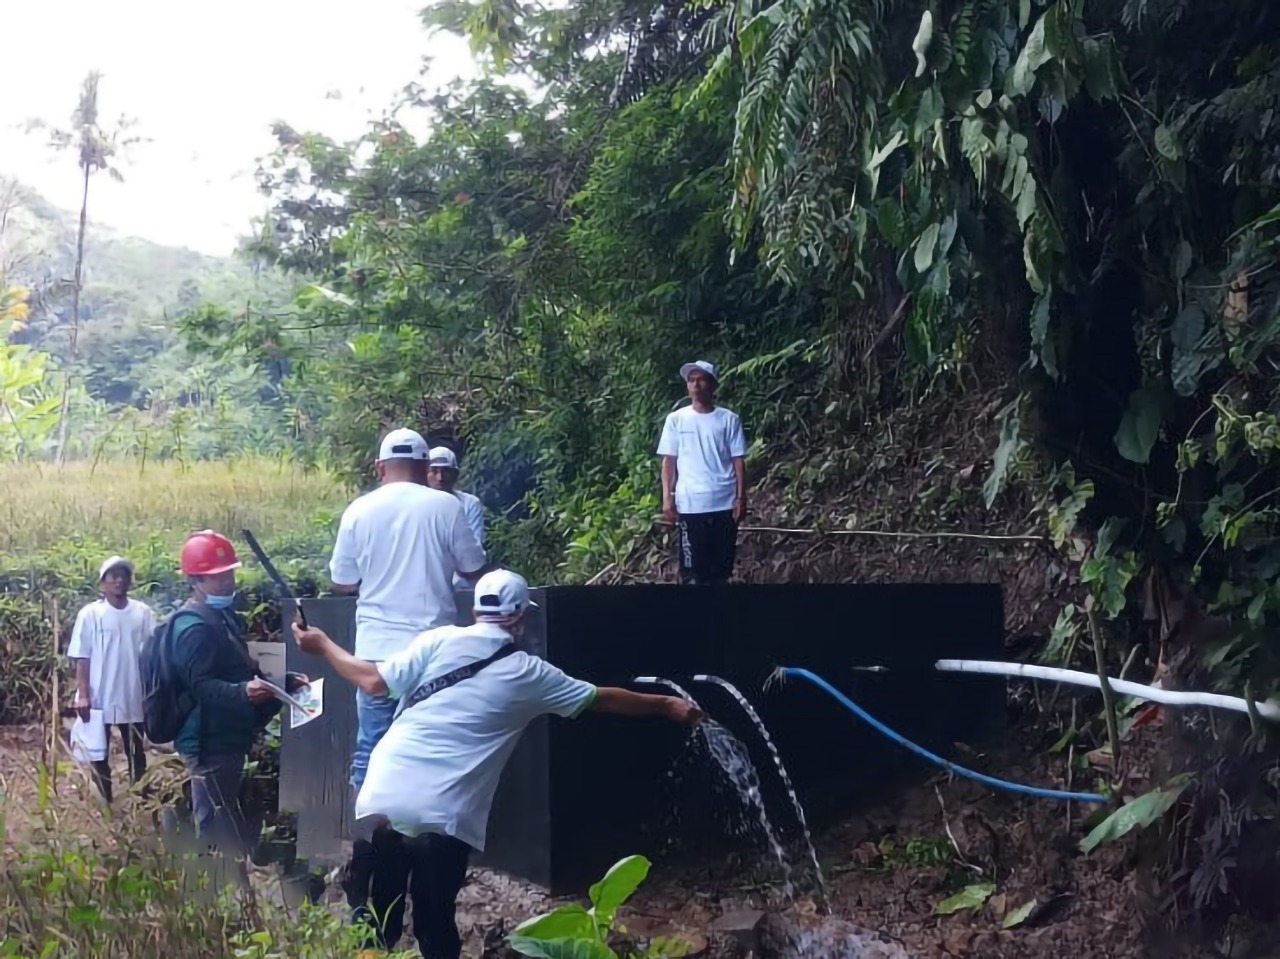 Hadapi Musim Kemarau, Fasilitas Air Bersih dan MCK untuk 4 Desa di Jawa Barat